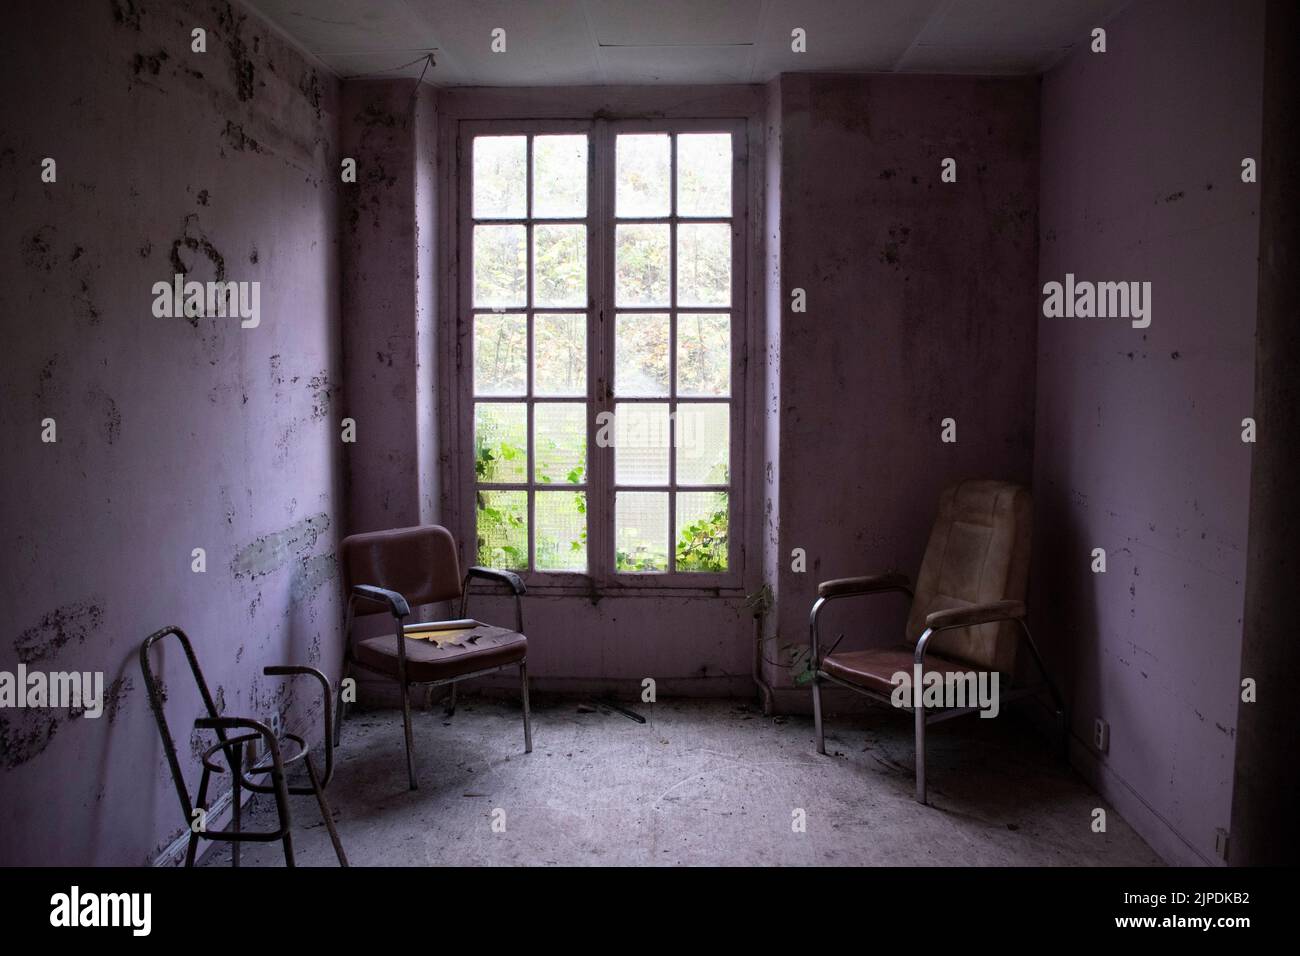 Un sanatorium abandonné à Angicourt, France avec des murs marqués et des fenêtres cassées Banque D'Images